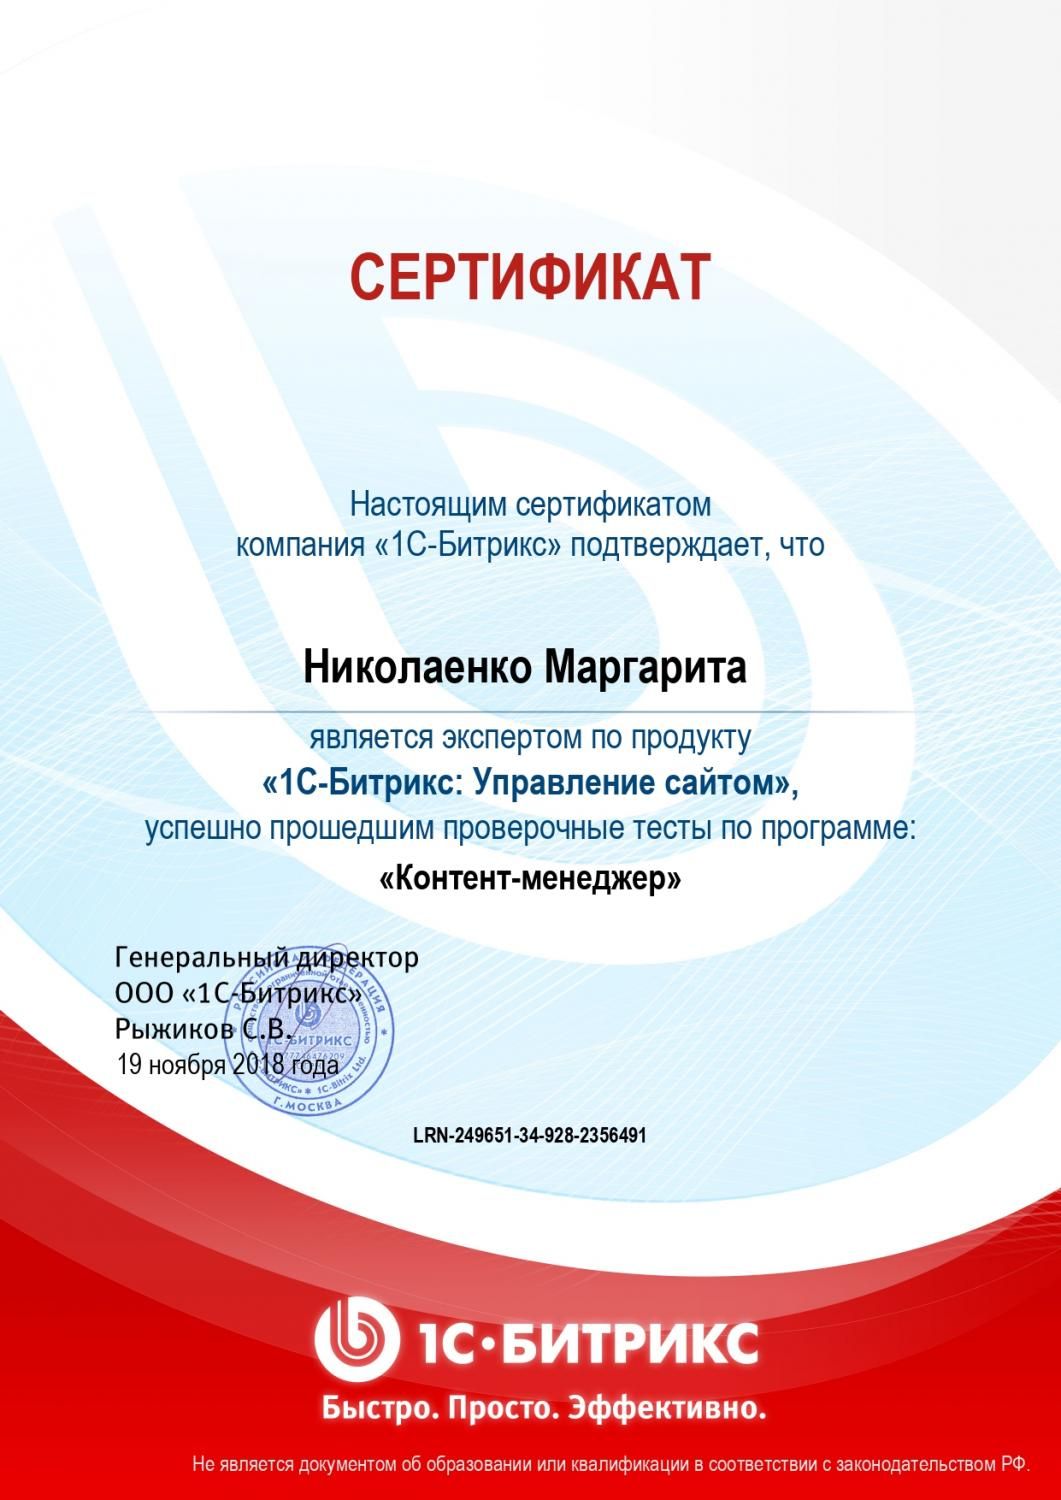 Сертификат эксперта по программе "Контент-менеджер" - Николаенко М. в Таганрога